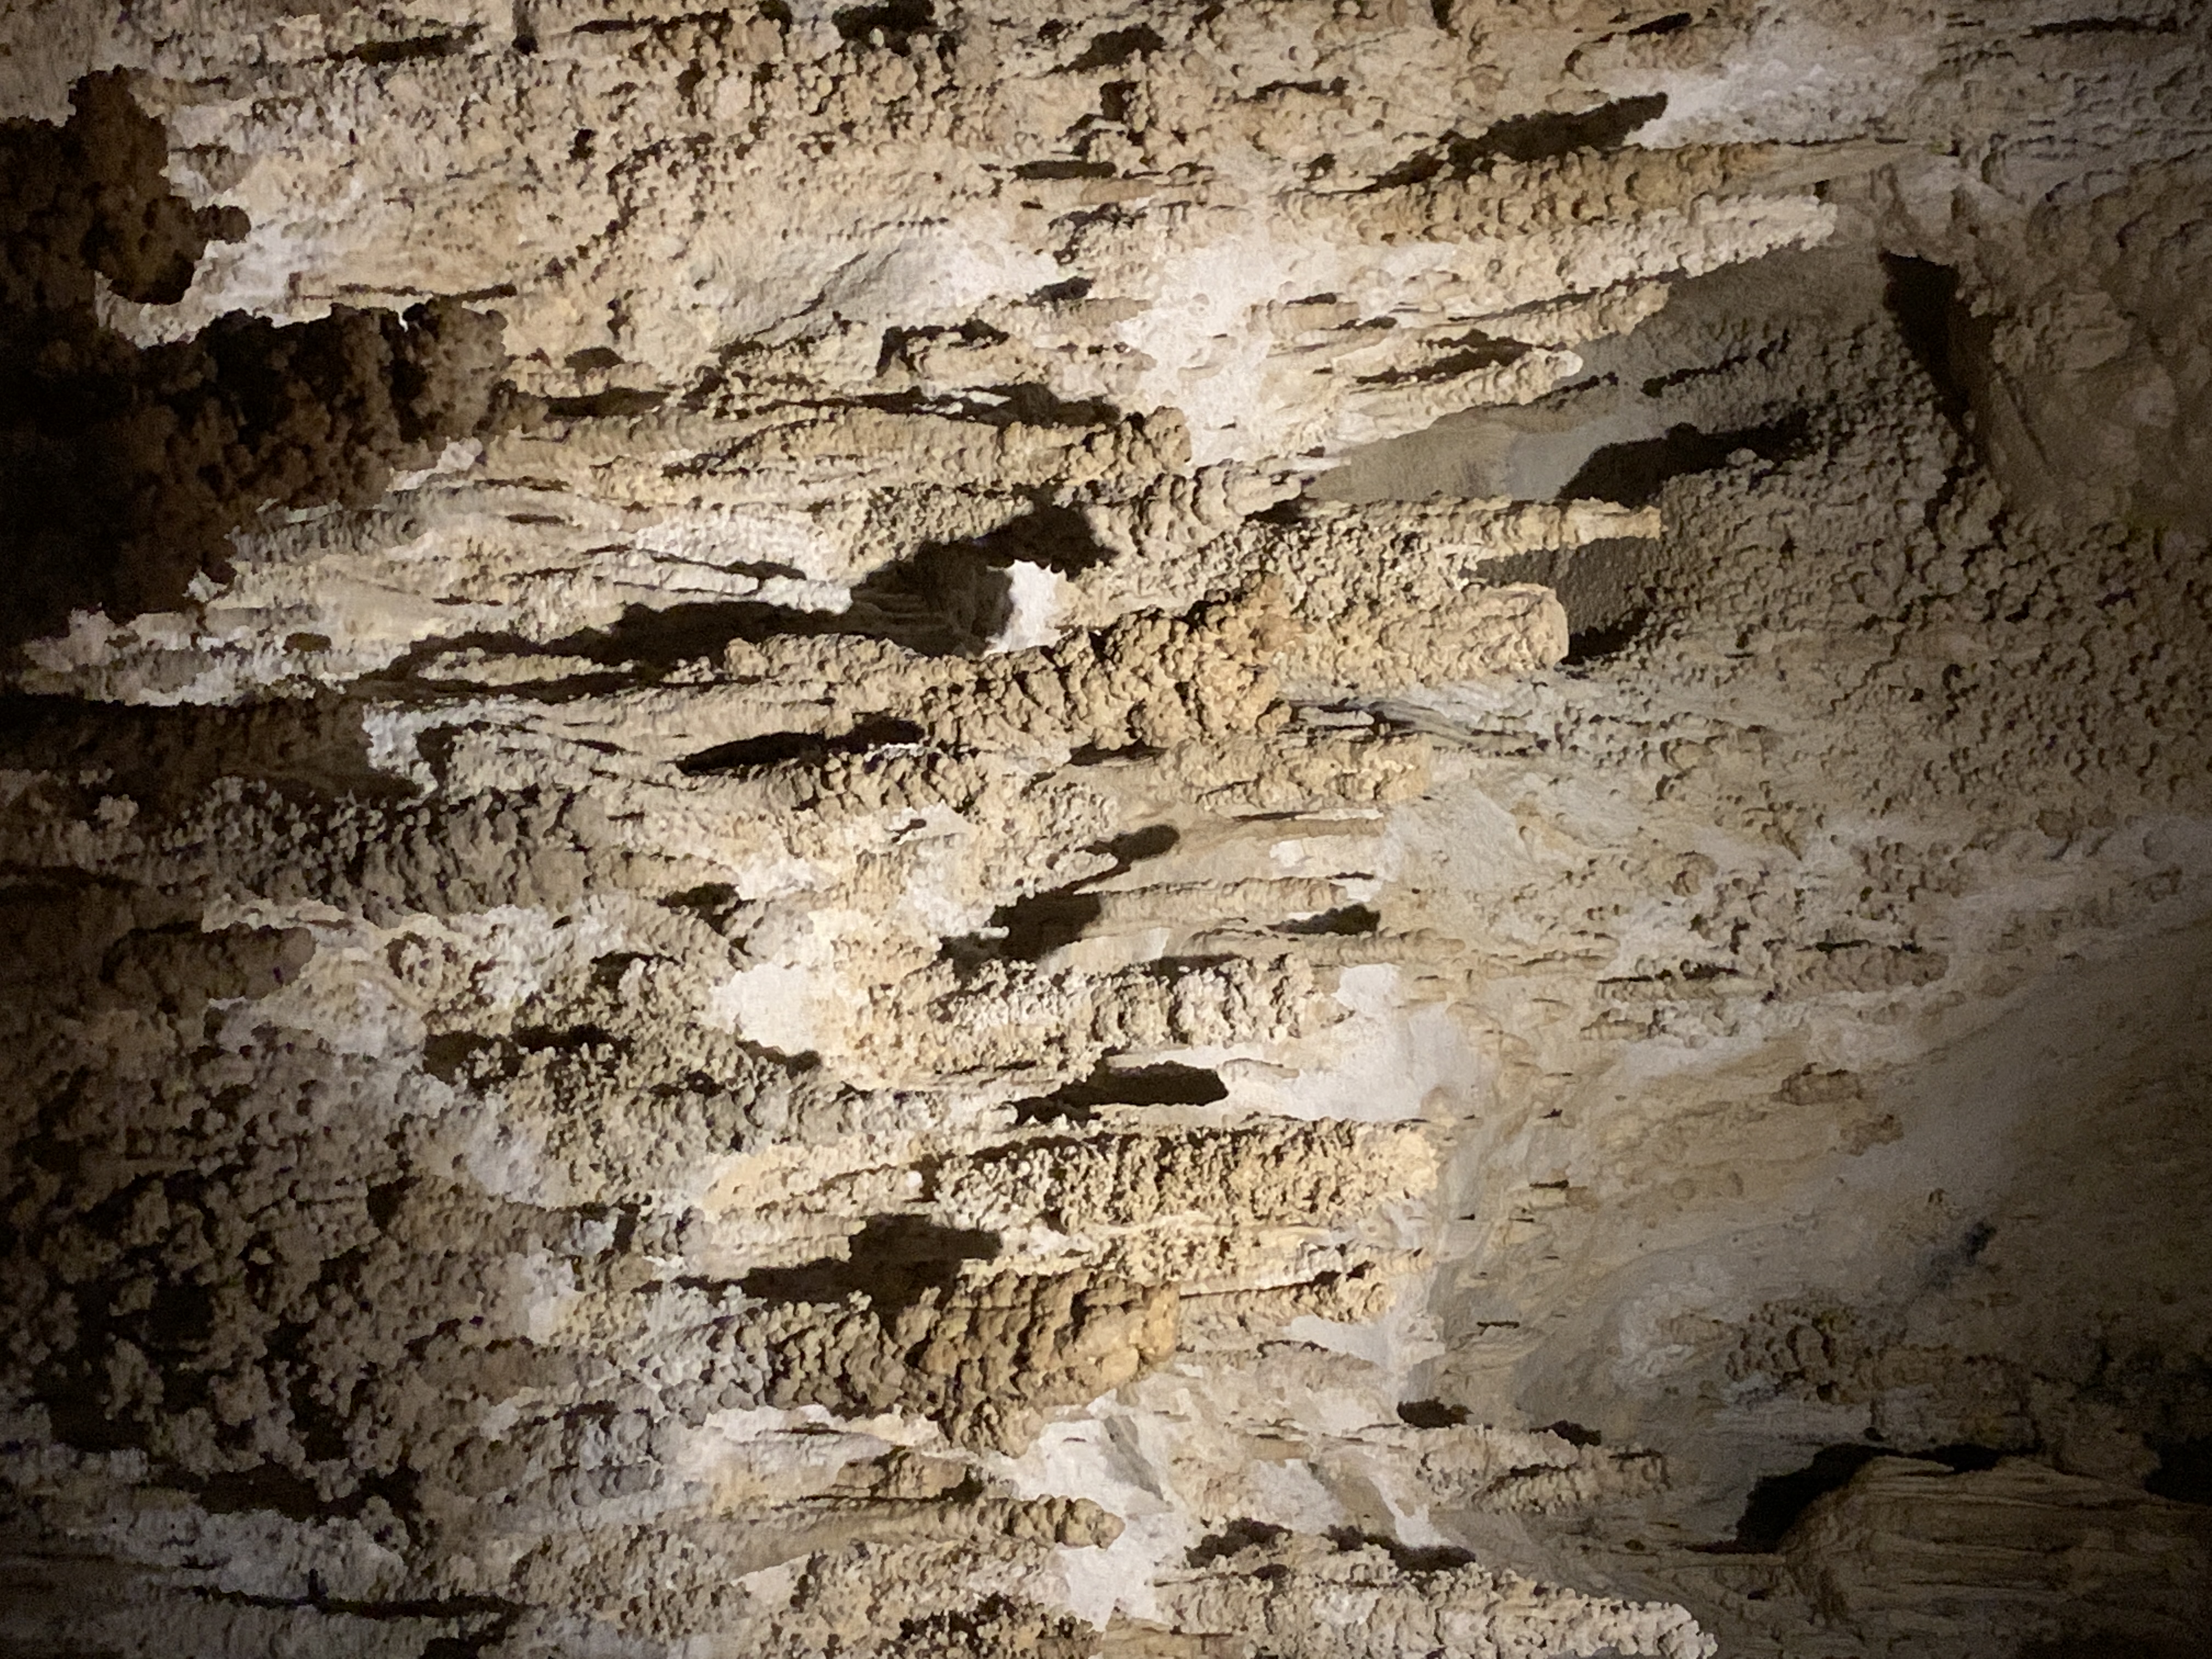 Stalactites and Stalagmites meeting. Carlsbad Caverns National Park